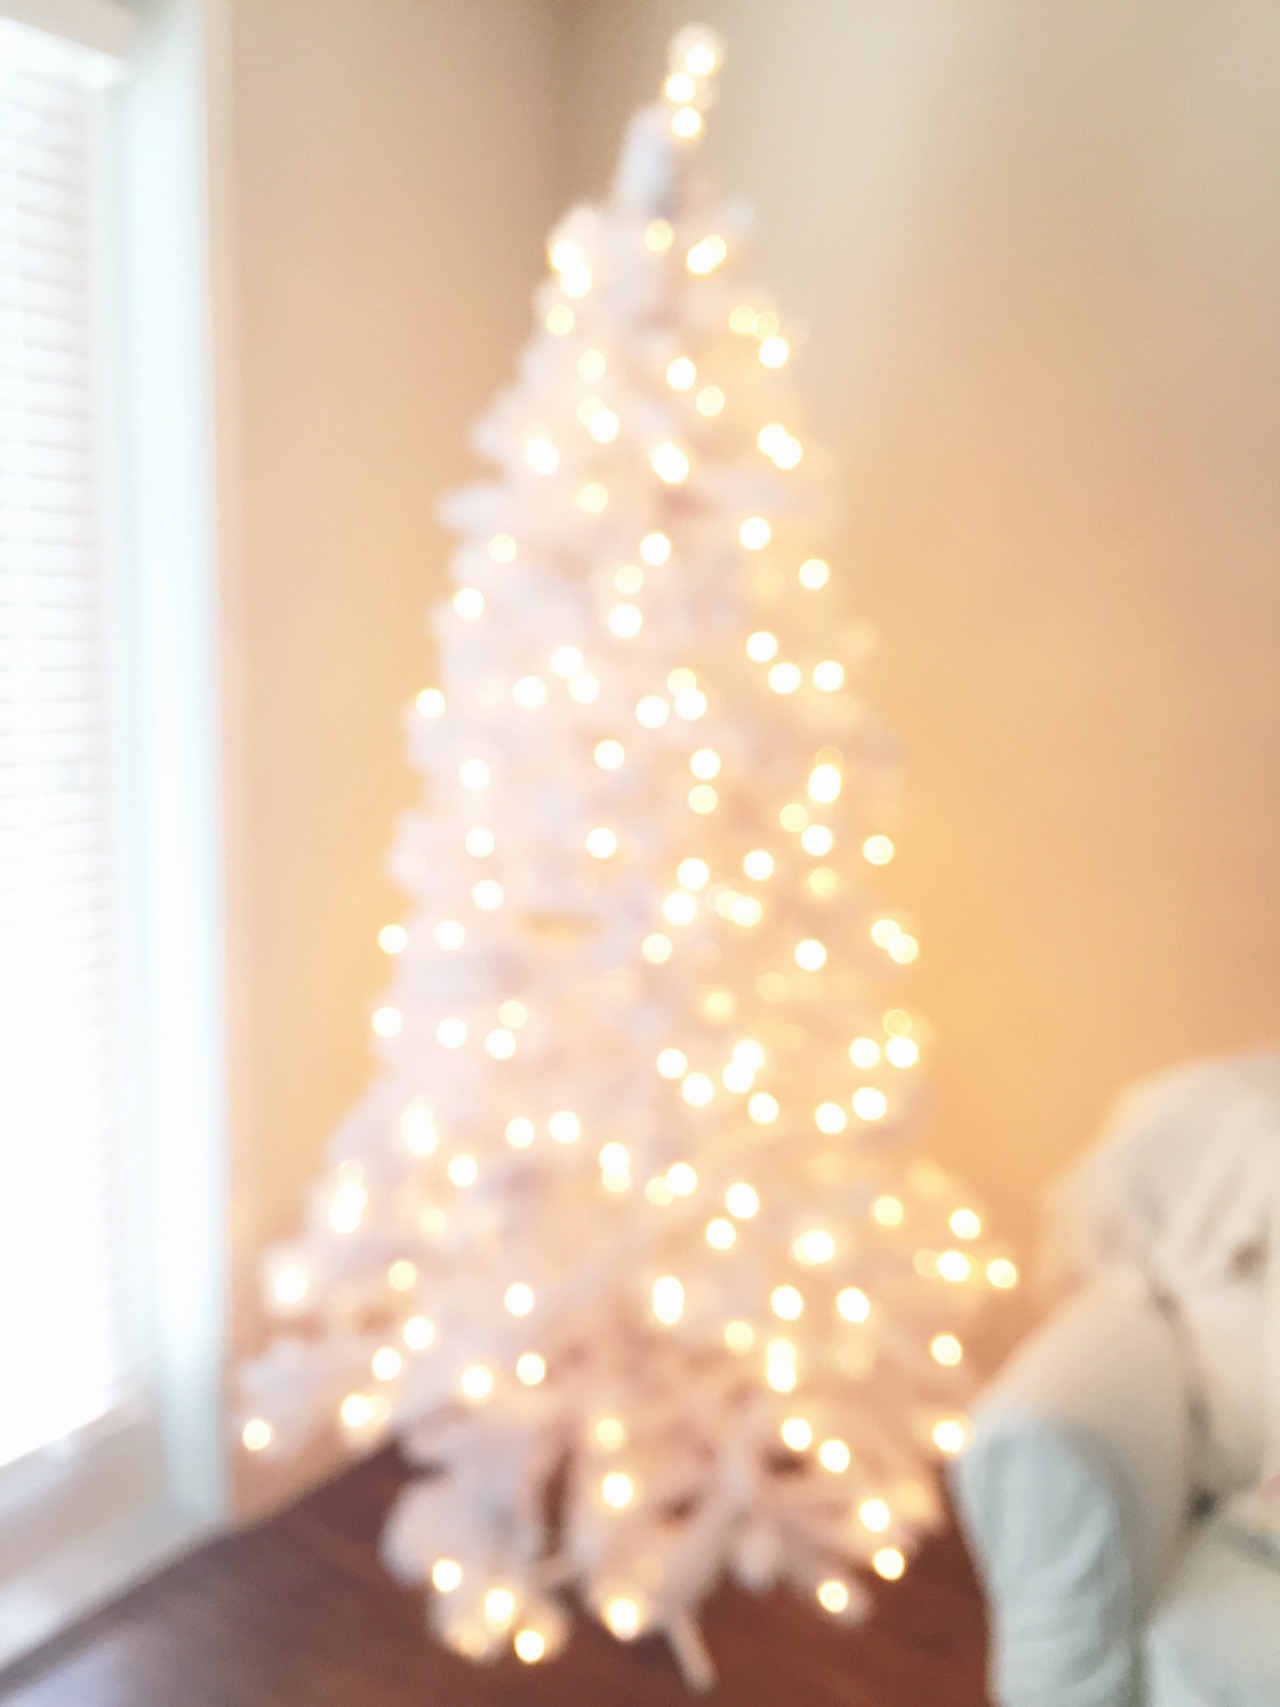 luckydayblog:

OH CHRISTMAS TREE 😍🎄